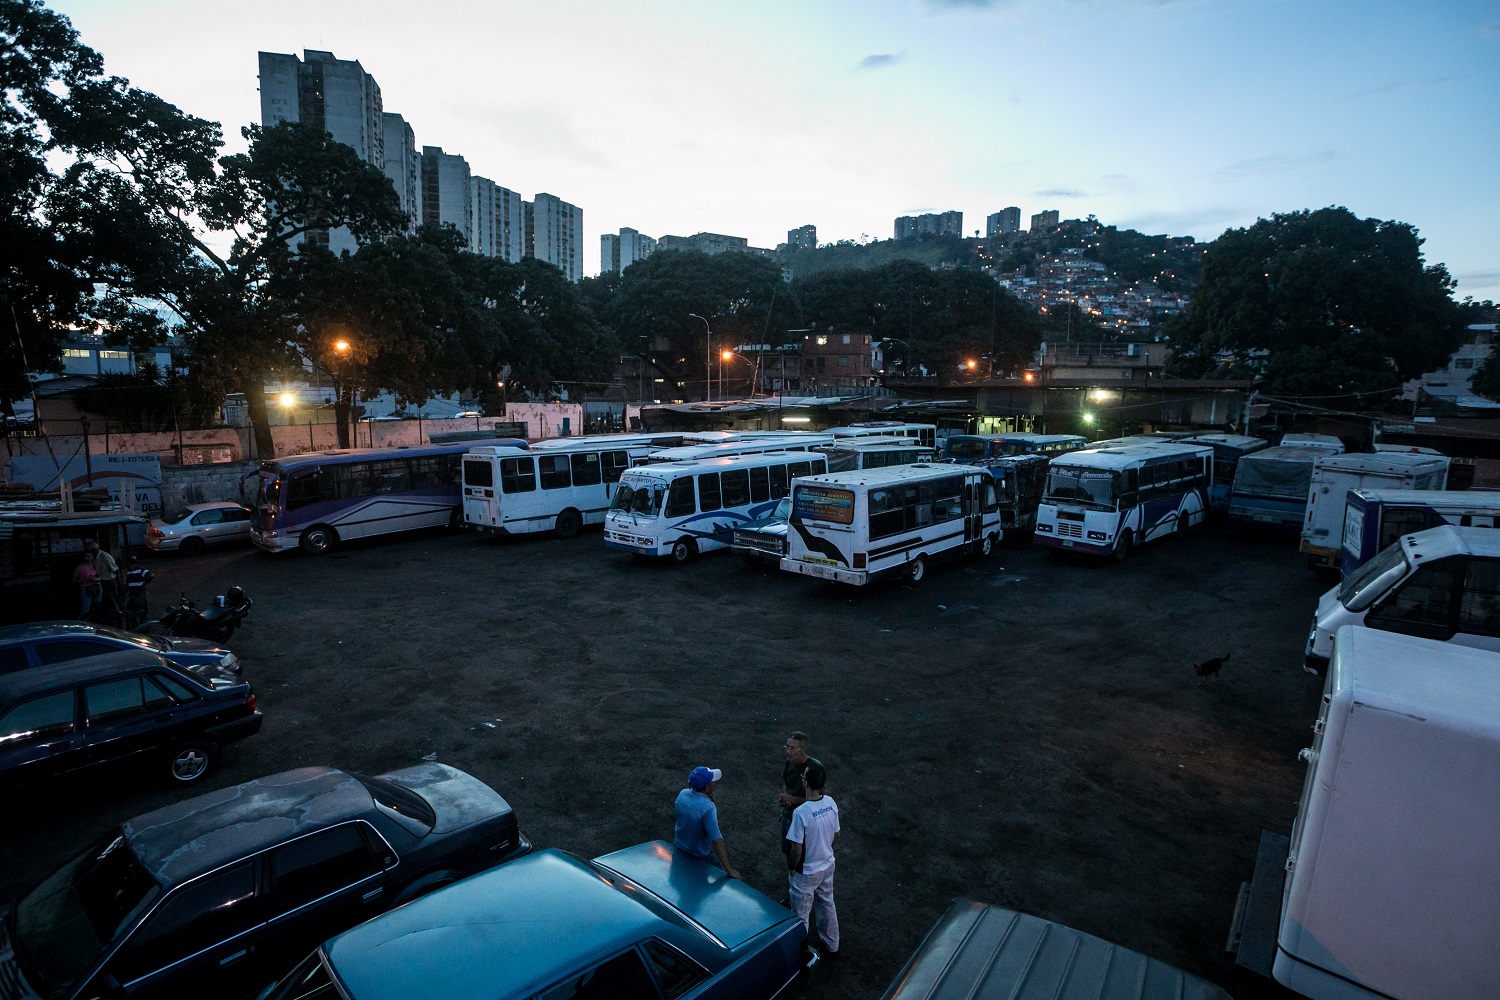 Fotografías del 10 de octubre del 2017, de búses de transporte público que no operan por falta de repuestos, en la ciudad de Caracas (Venezuela). Los altos costos de mantenimiento, la disminución de importación de repuestos, una galopante inflación y la escasez de efectivo tienen al sistema de transporte de Venezuela en jaque, mientras la población padece los efectos de esta crisis con un pasaje inestable y largos tiempos de espera para trasladarse. EFE/MIGUEL GUTIÉRREZ